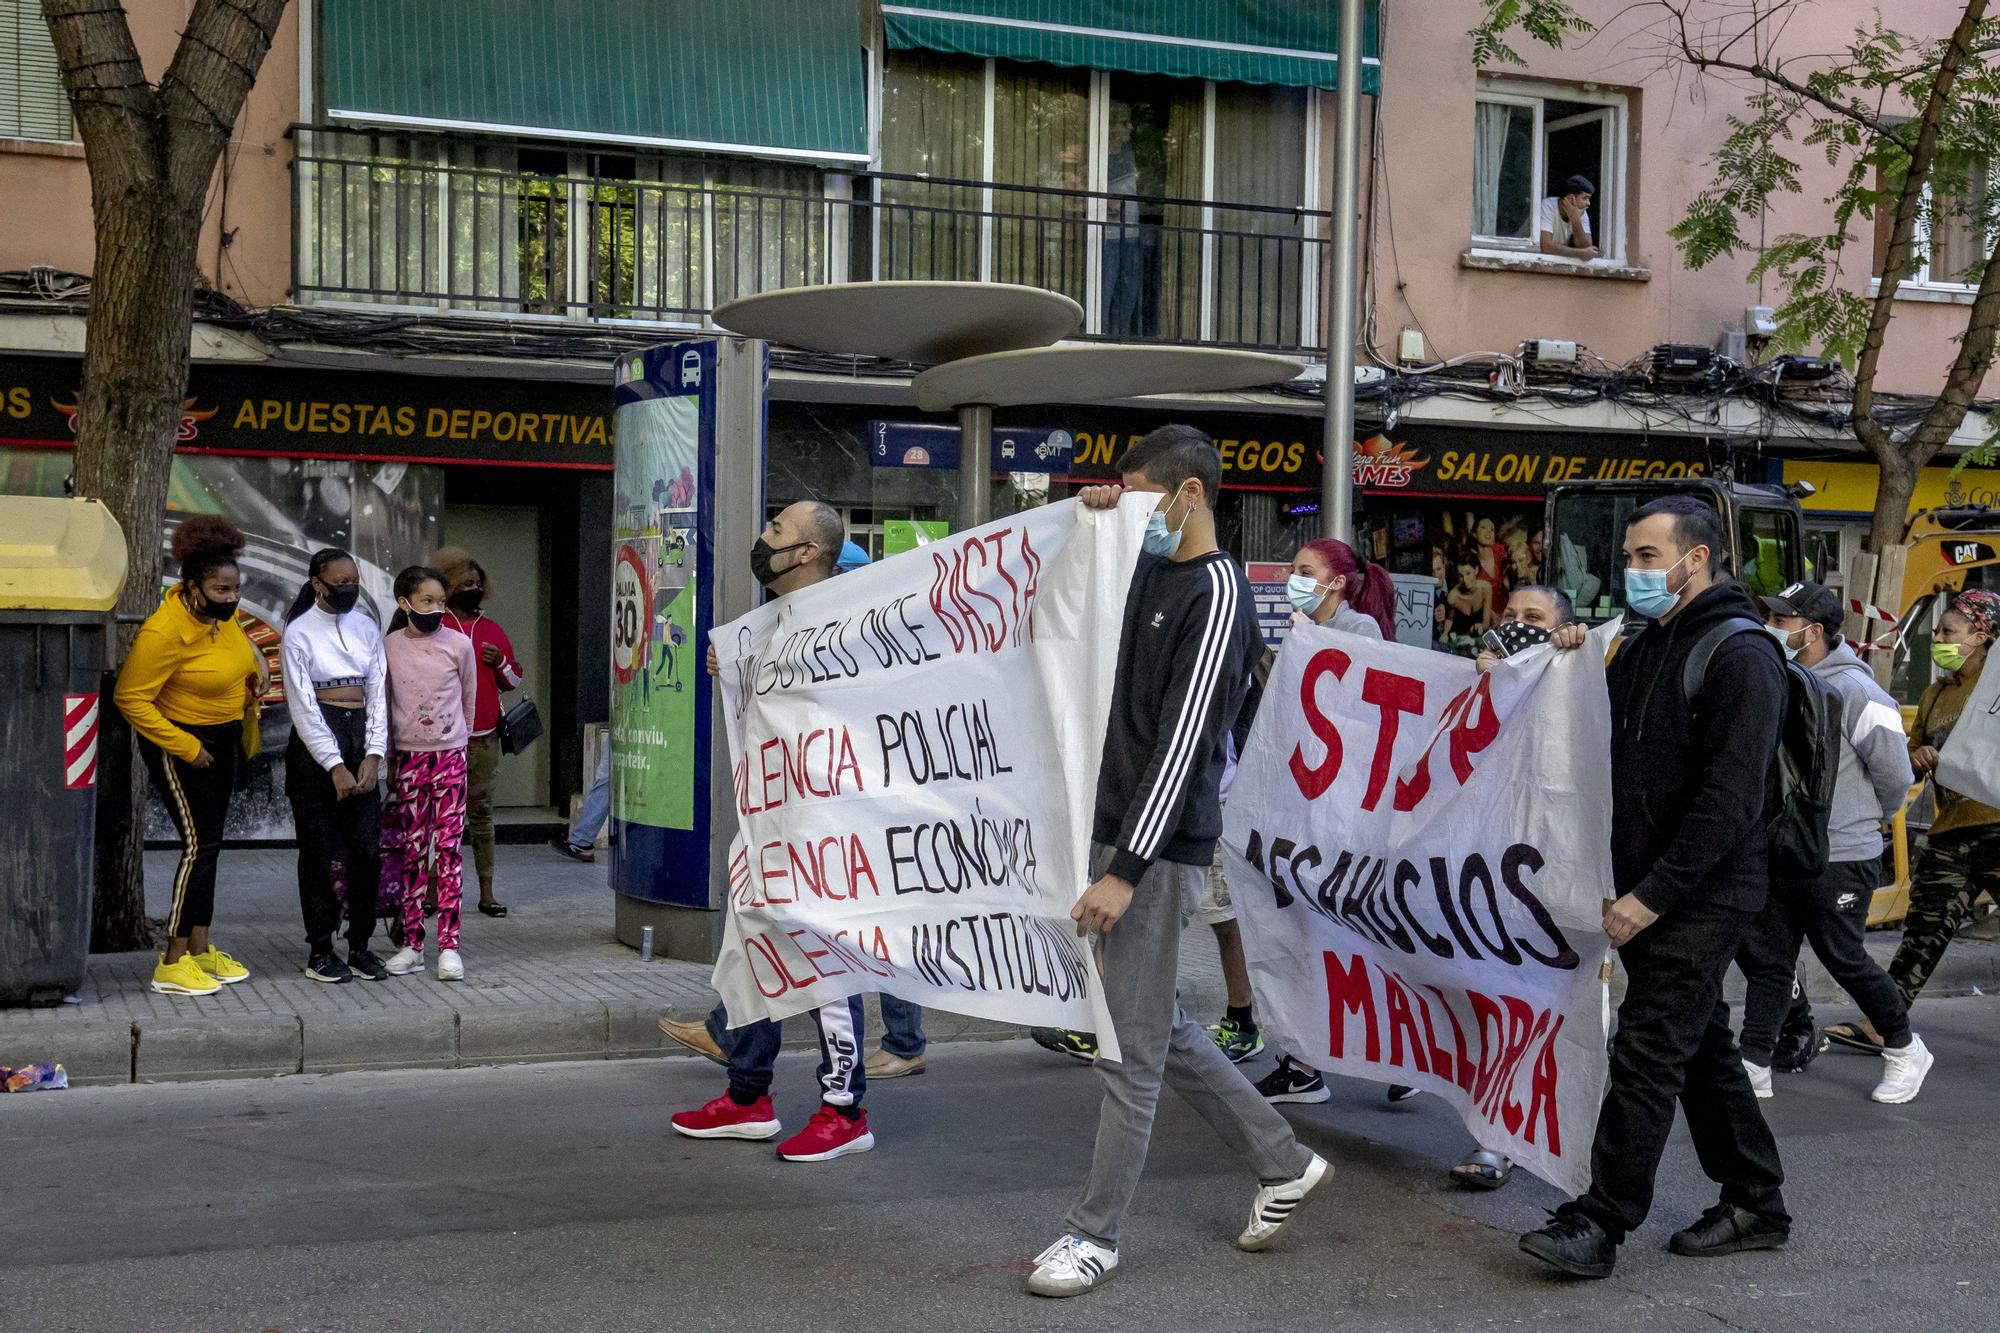 Stop Desnonaments se moviliza en Son Gotleu para pedir "el fin de la violencia económica" de los desahucios